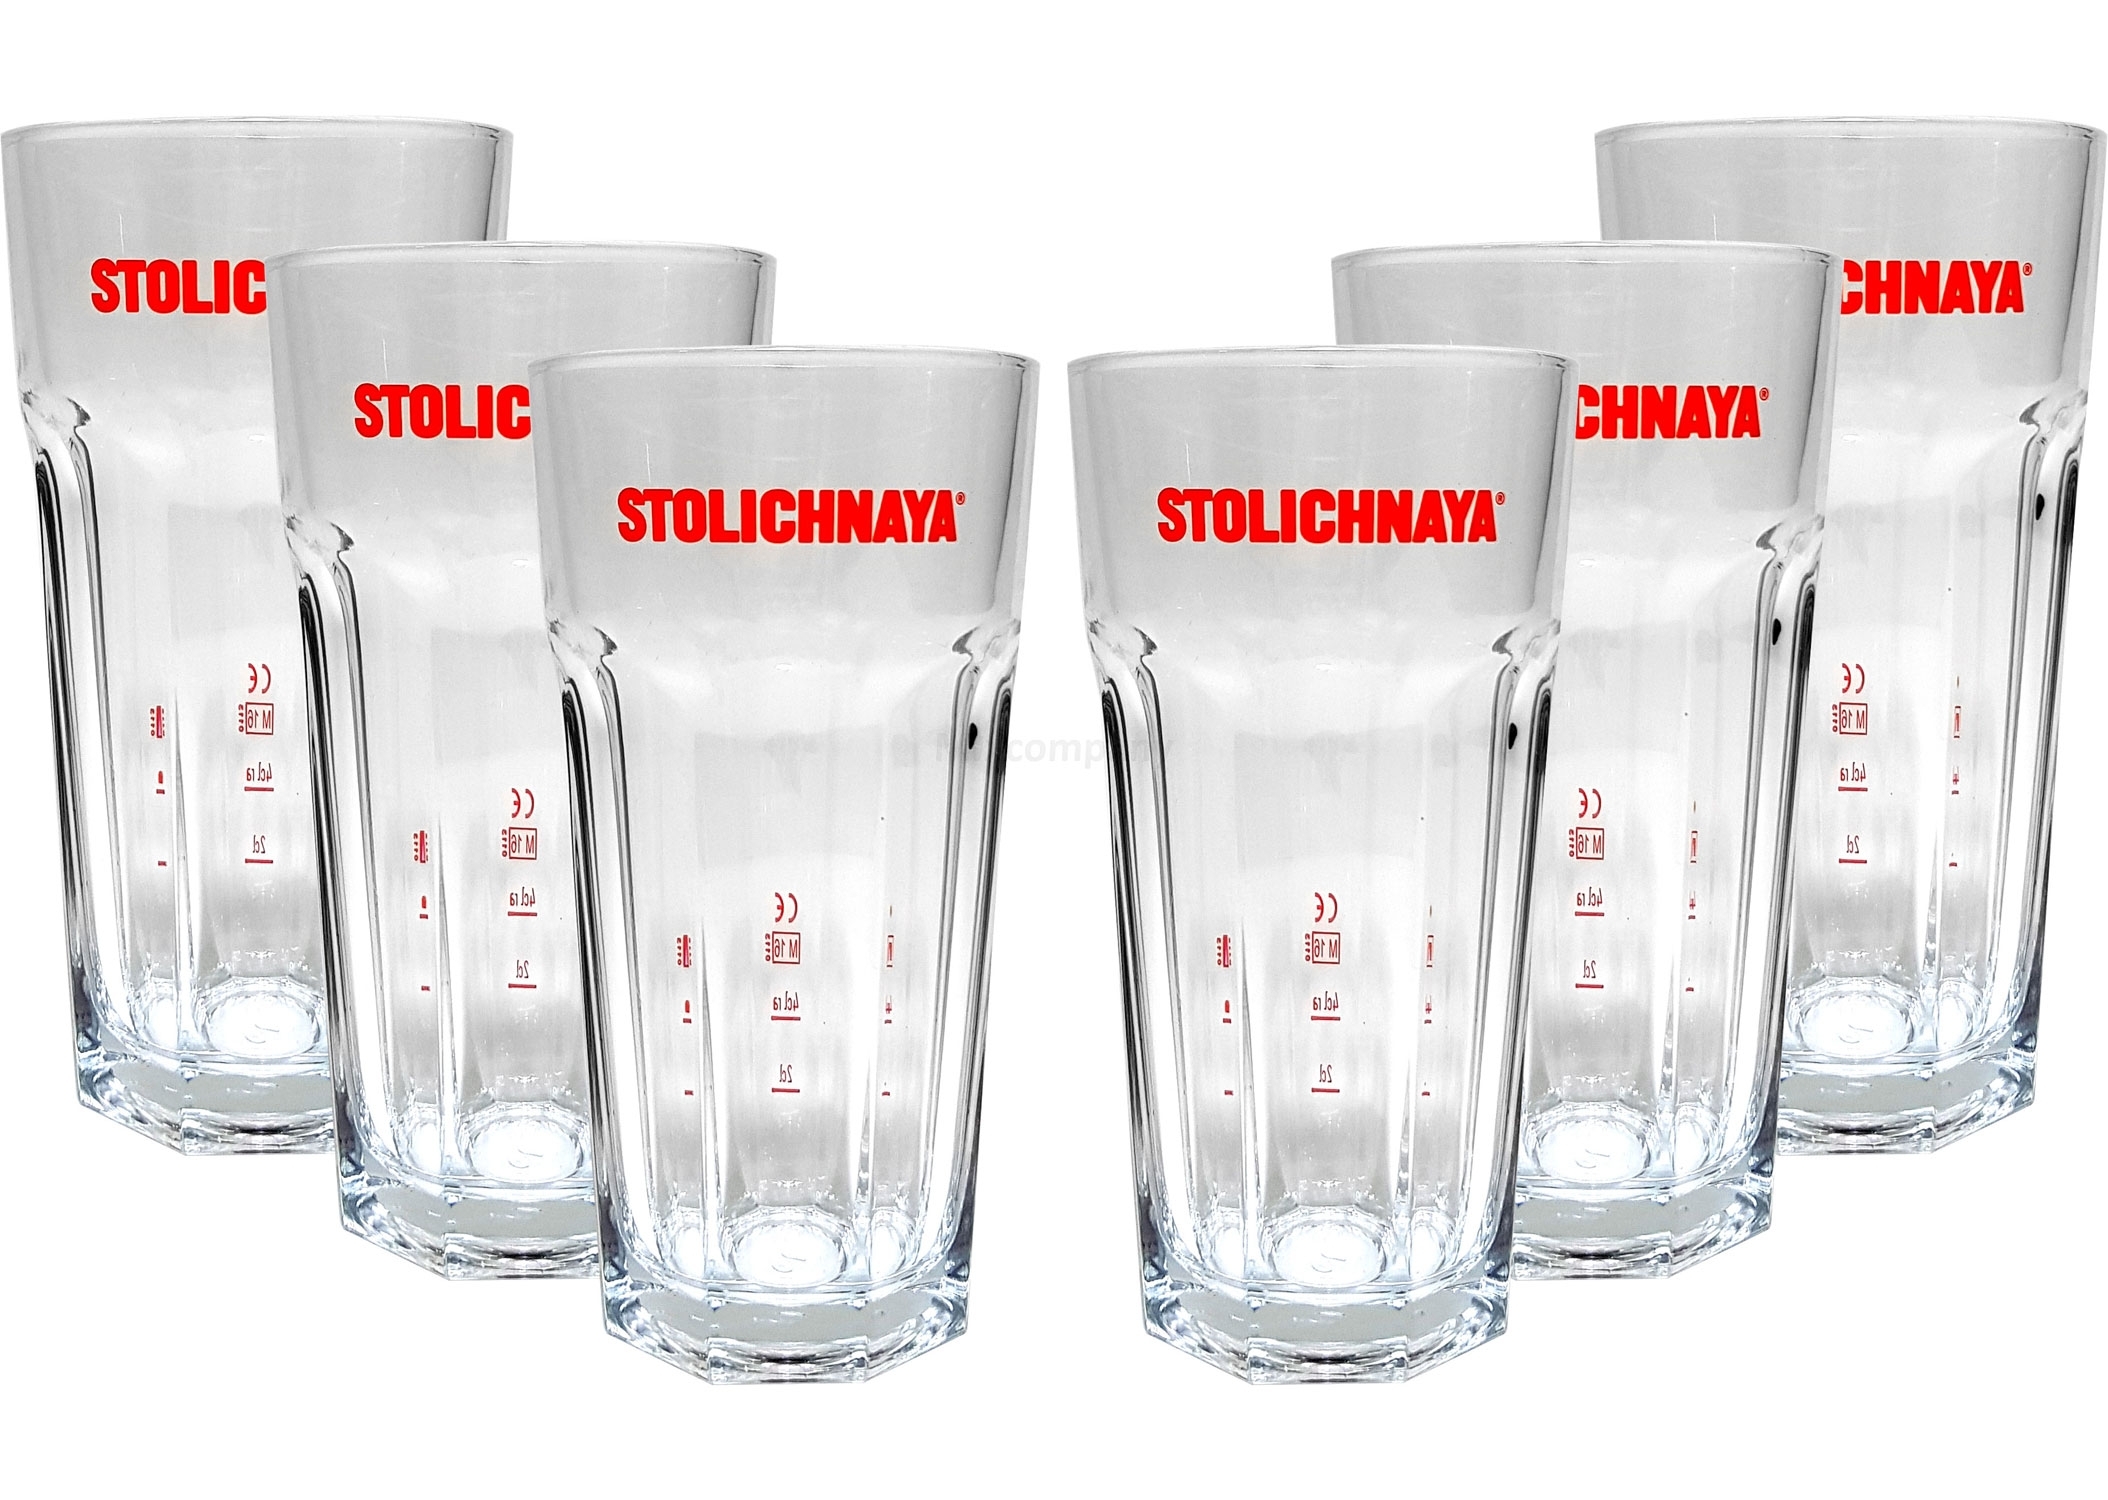 Stolichnaya Glas Gläser-Set - 6x Longdrink Gläser 2/4cl geeicht